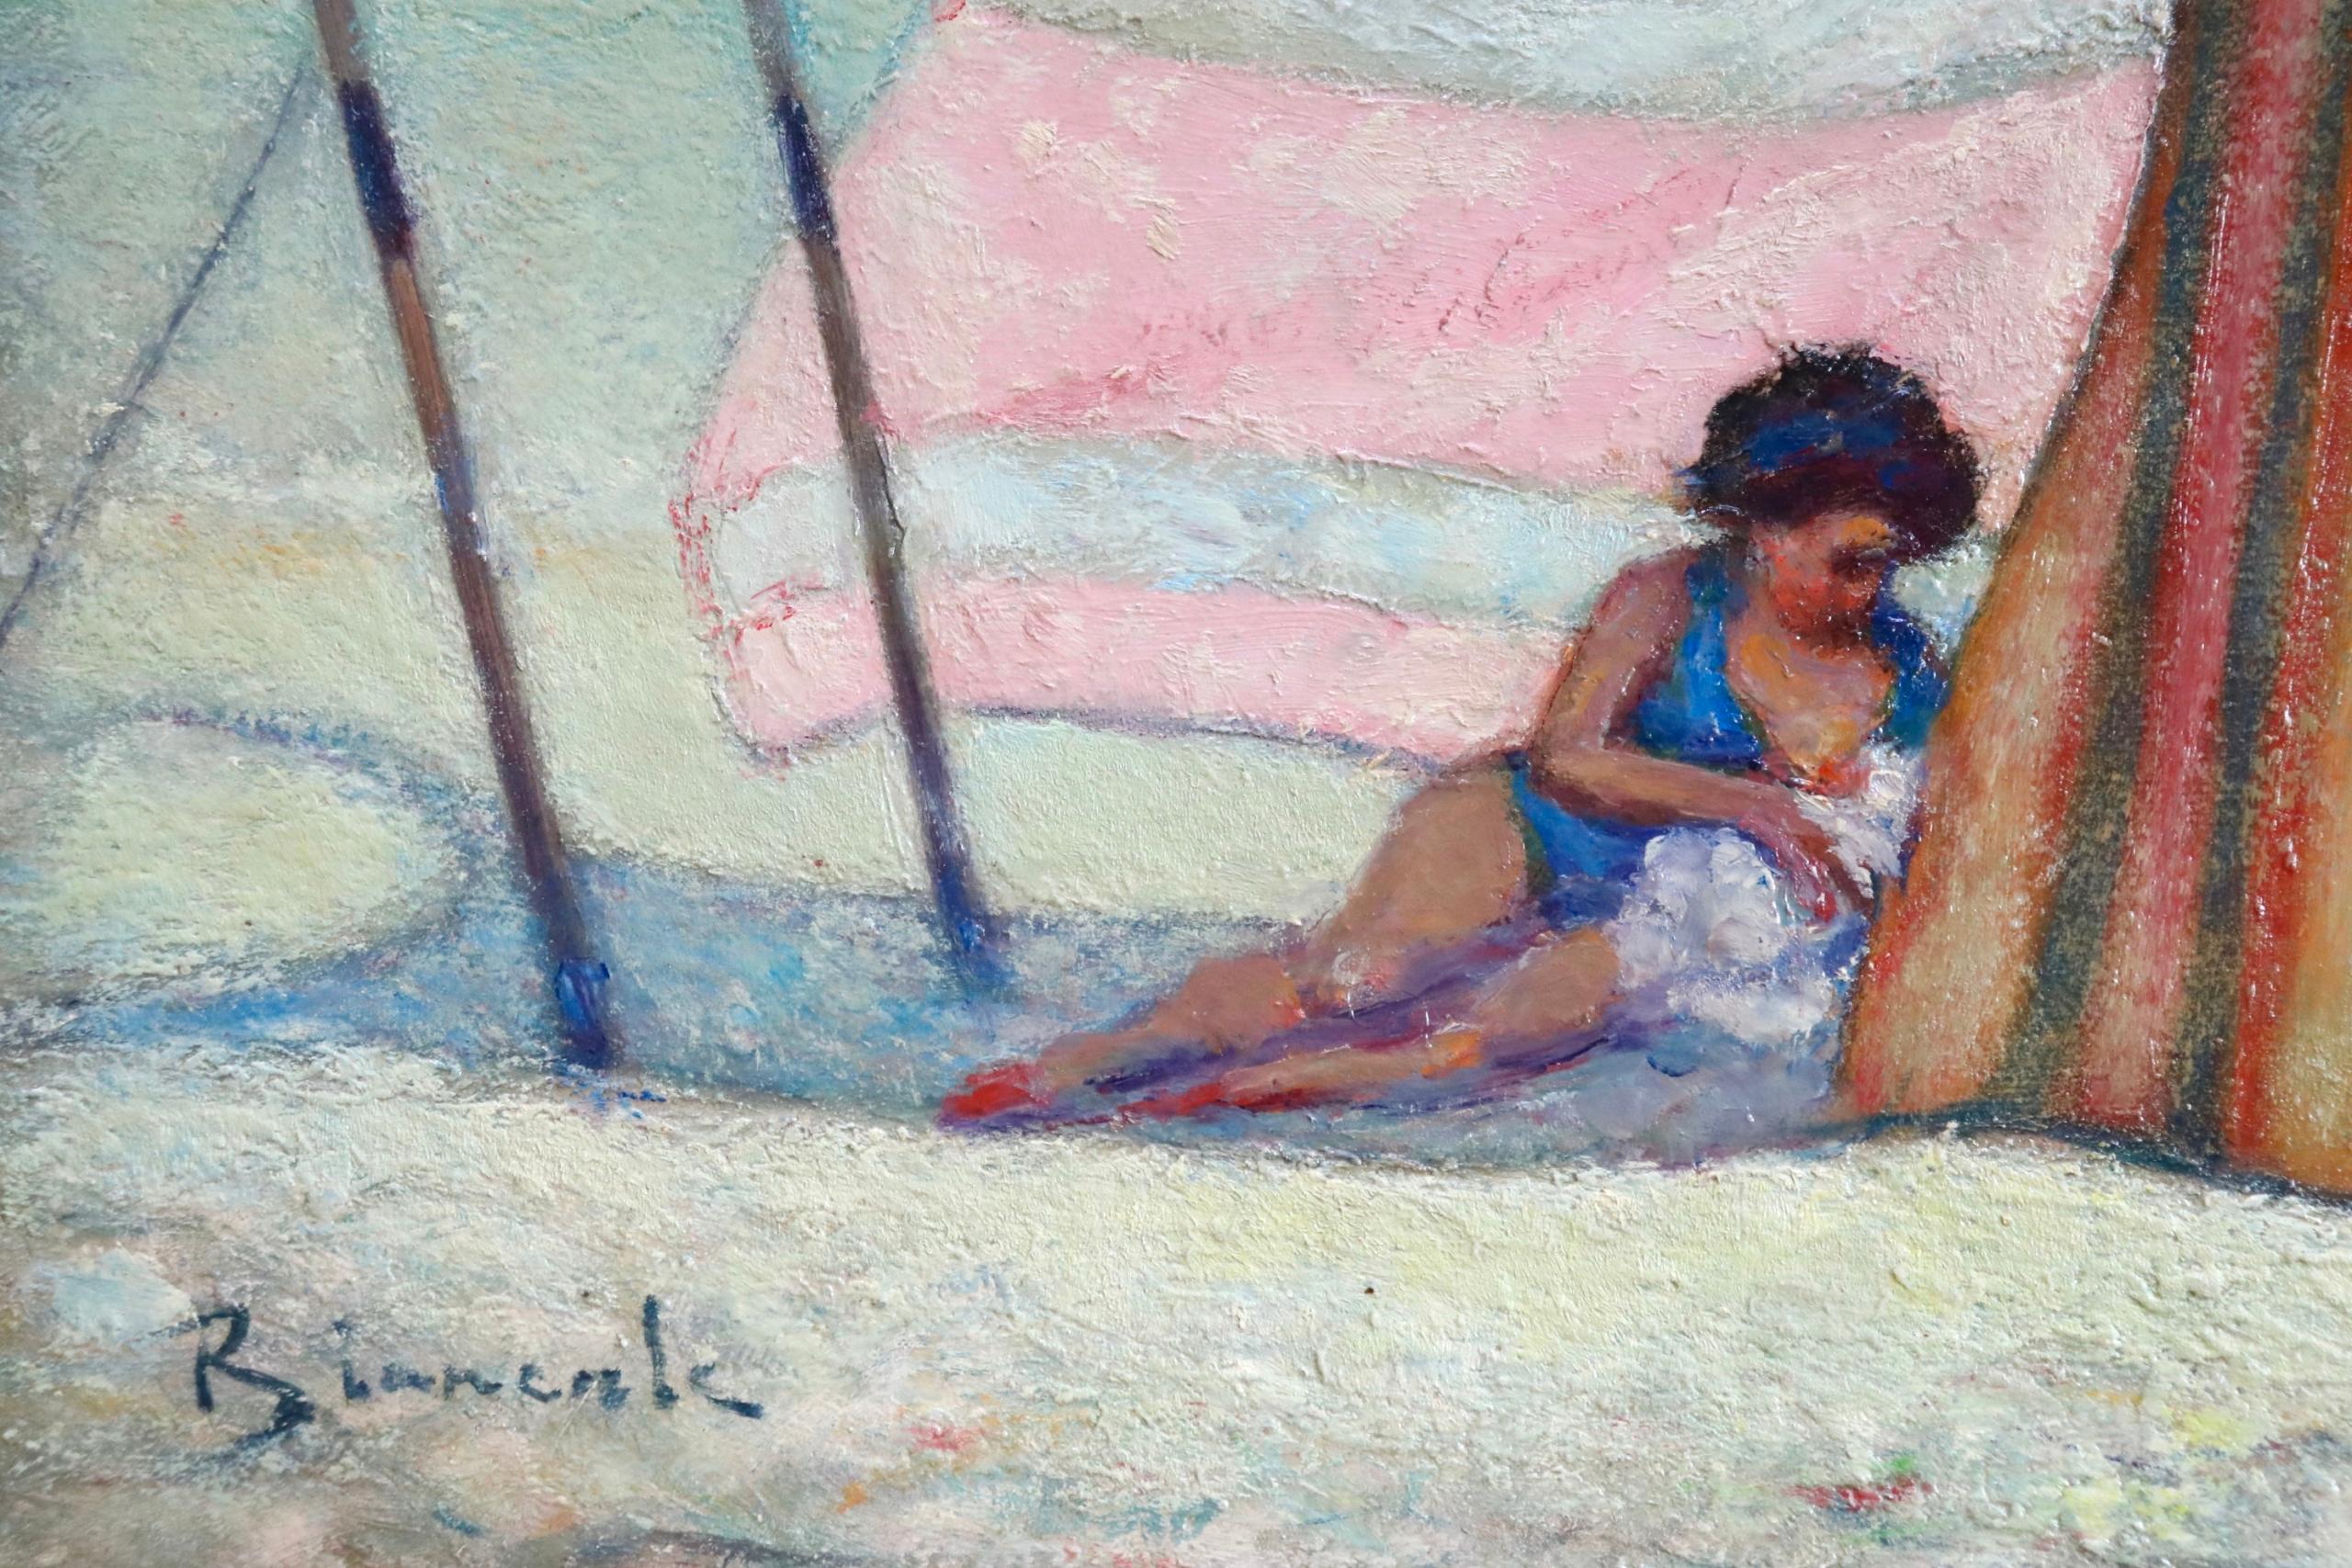 Mere et enfant sur la plage - Post Impressionist, Figures on Beach - B Biancale - Post-Impressionist Painting by Bernardo Biancale